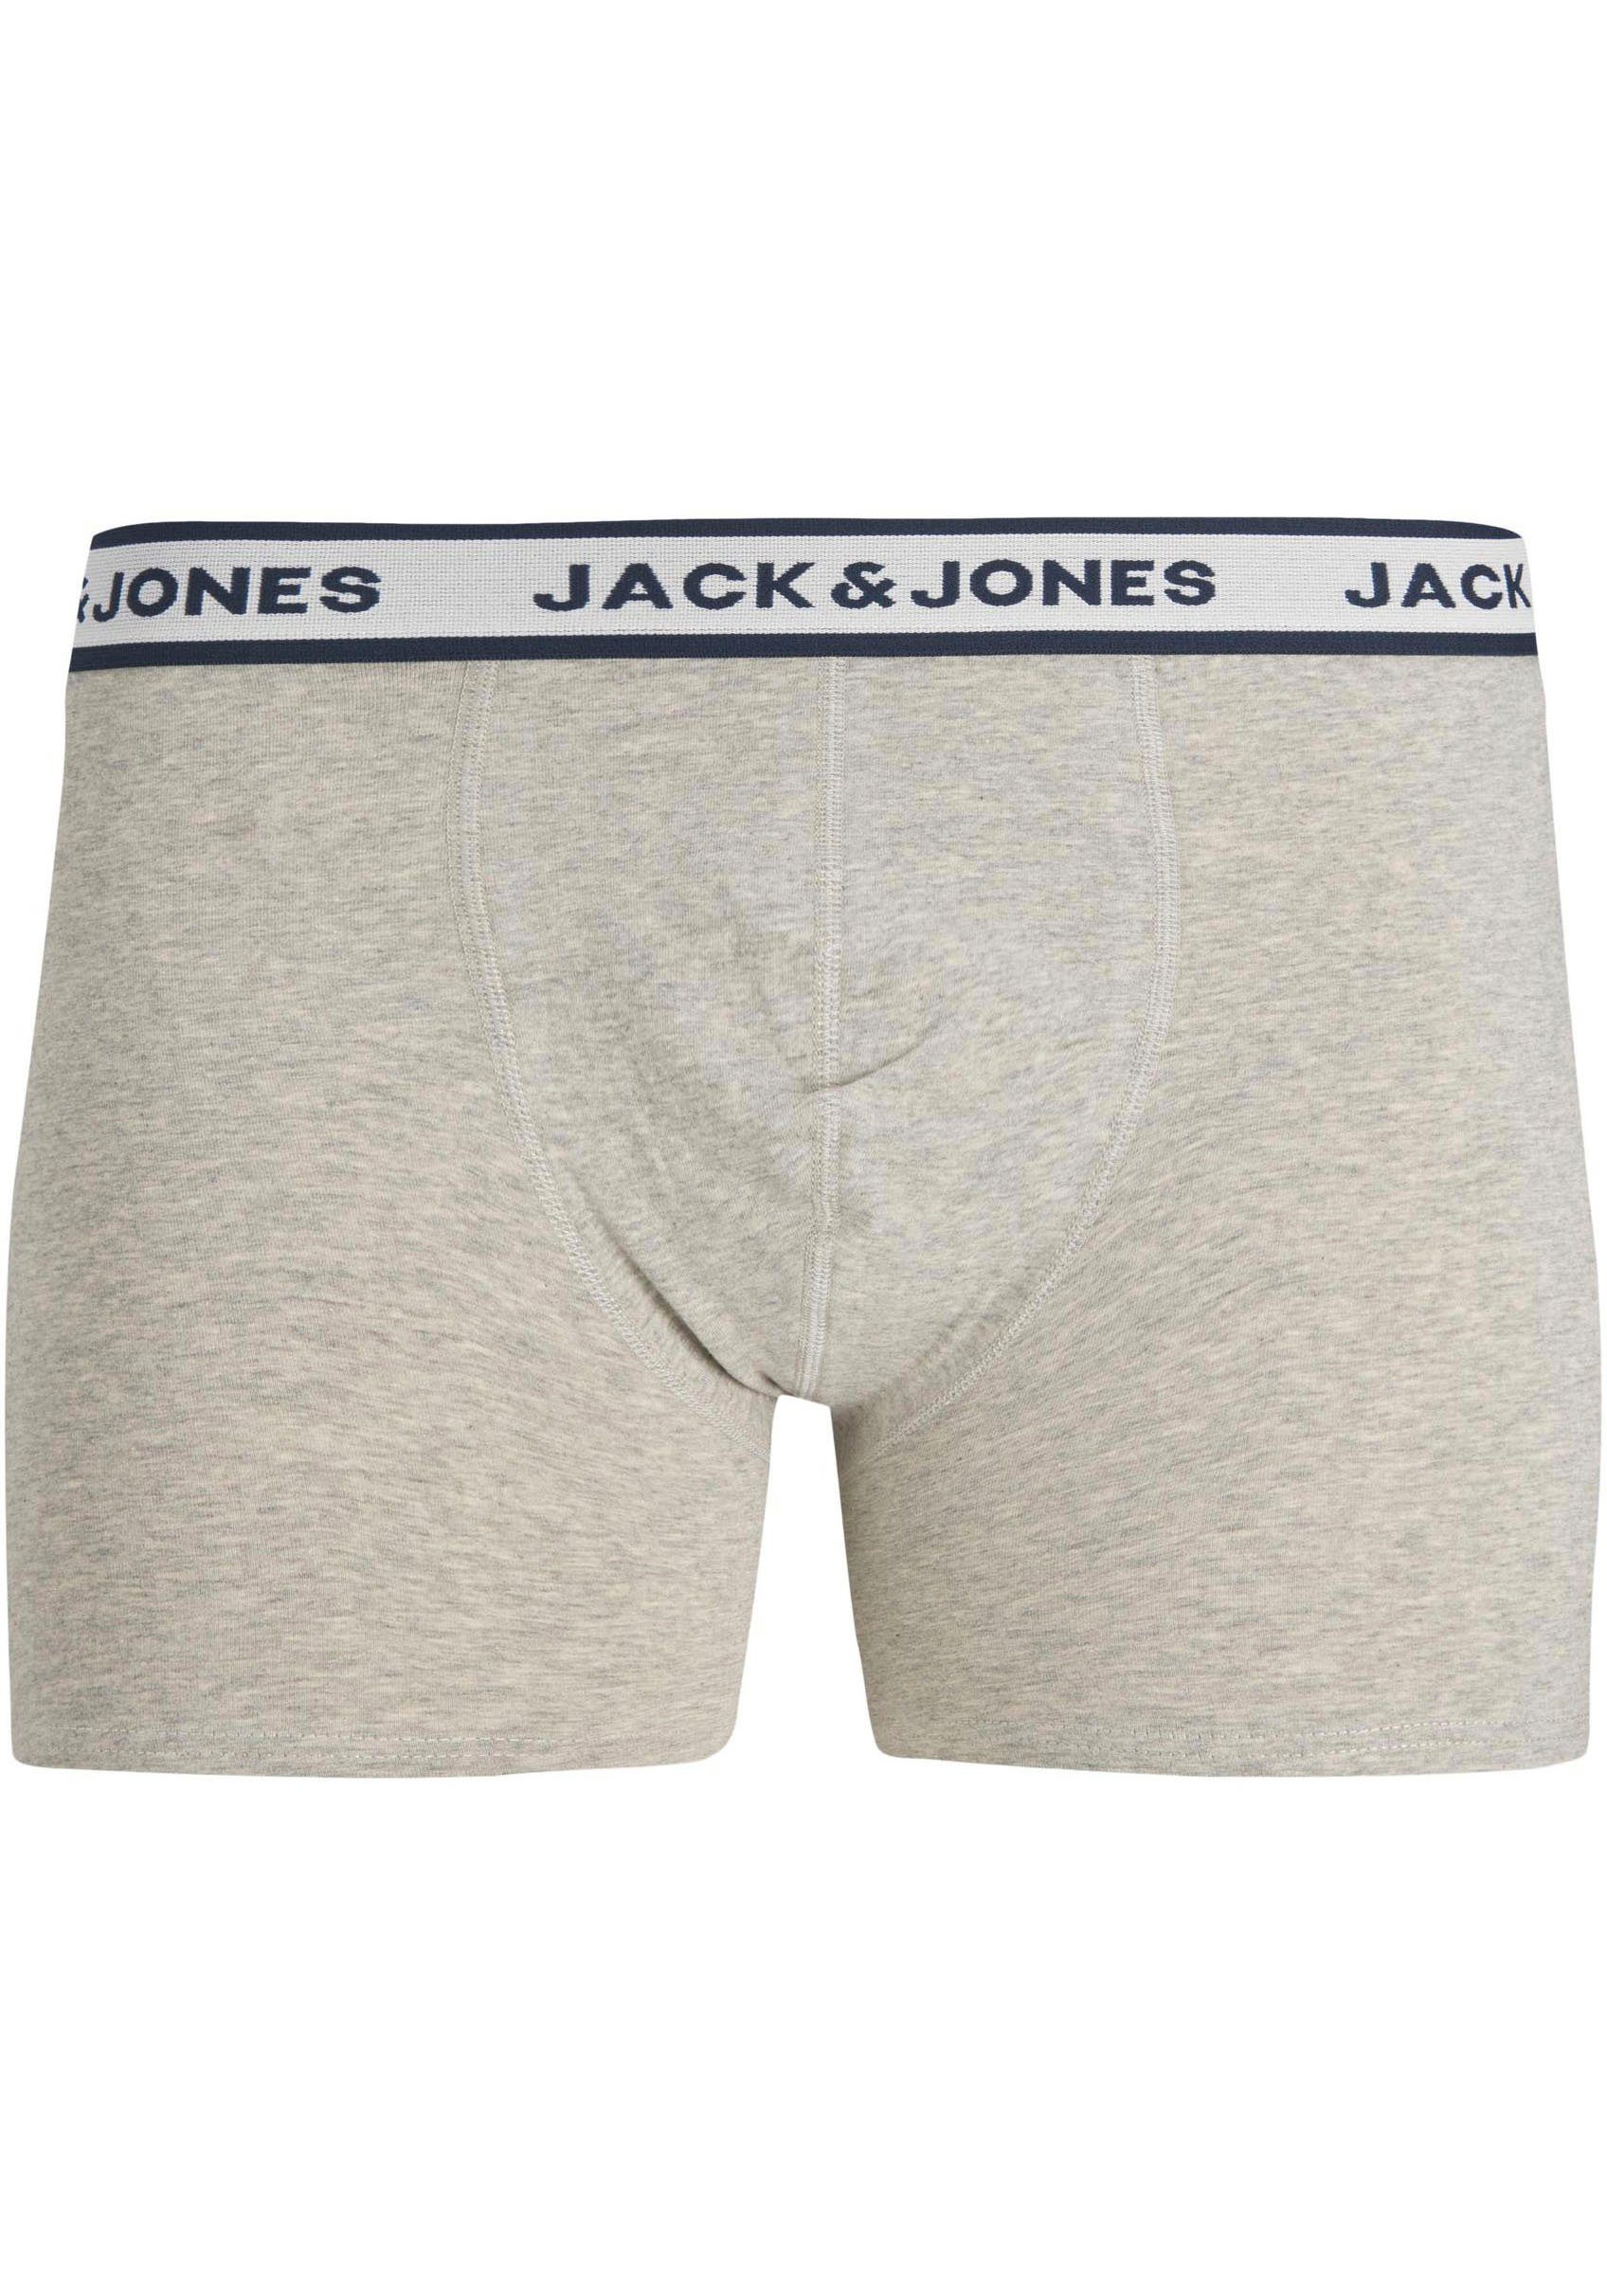 Melange Grey BRIEFS Light JACSOLID Boxershorts BOXER 3 3-St) Jones Jack & (Packung, PACK NOOS